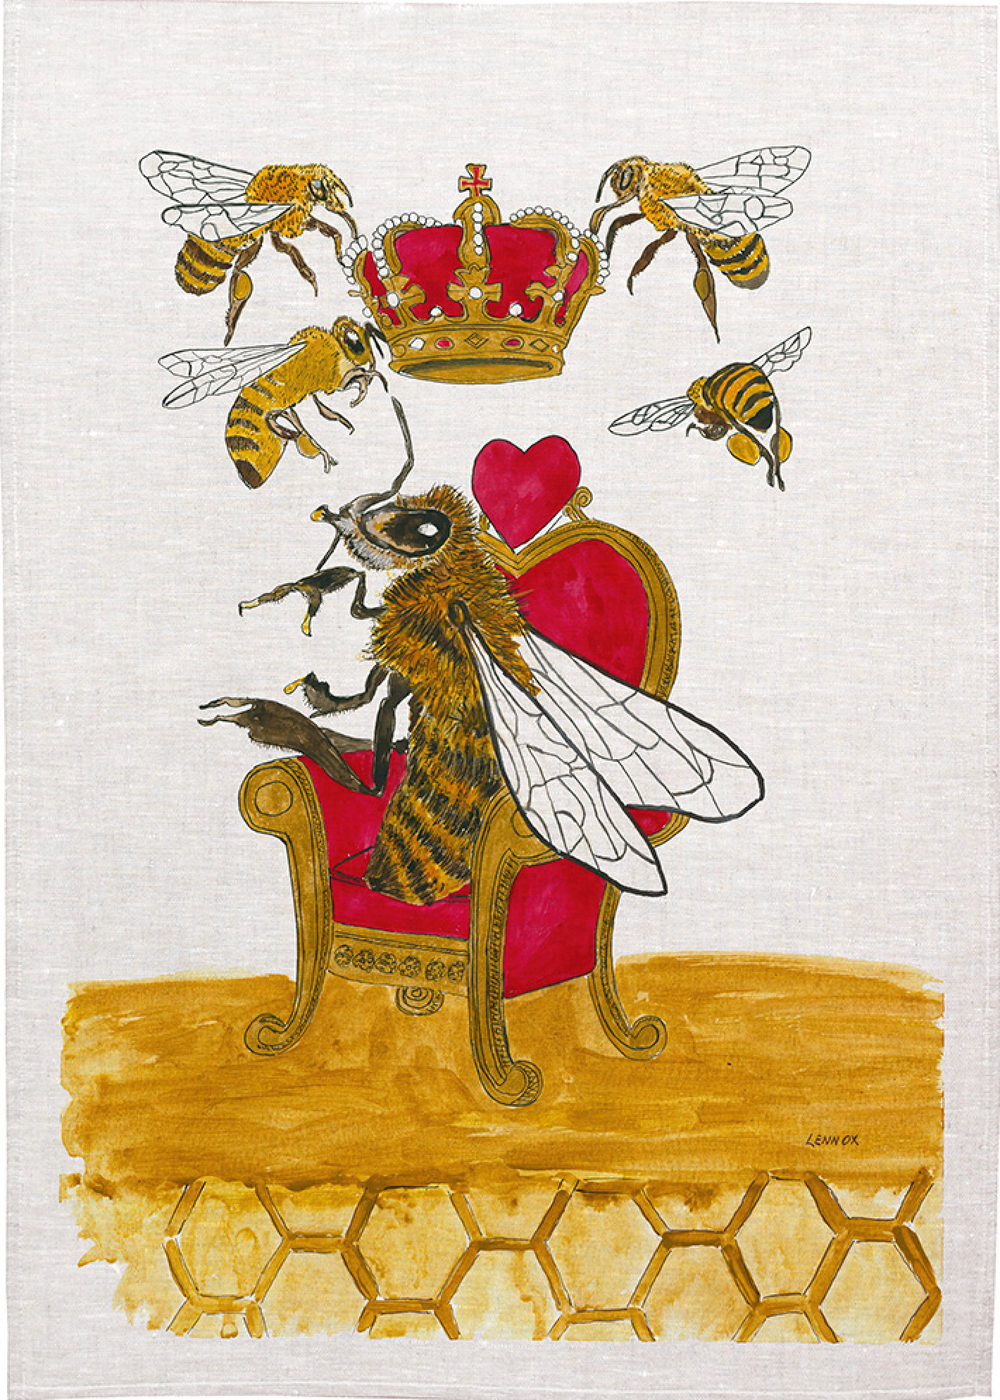 Tea Towel - Queen Bee